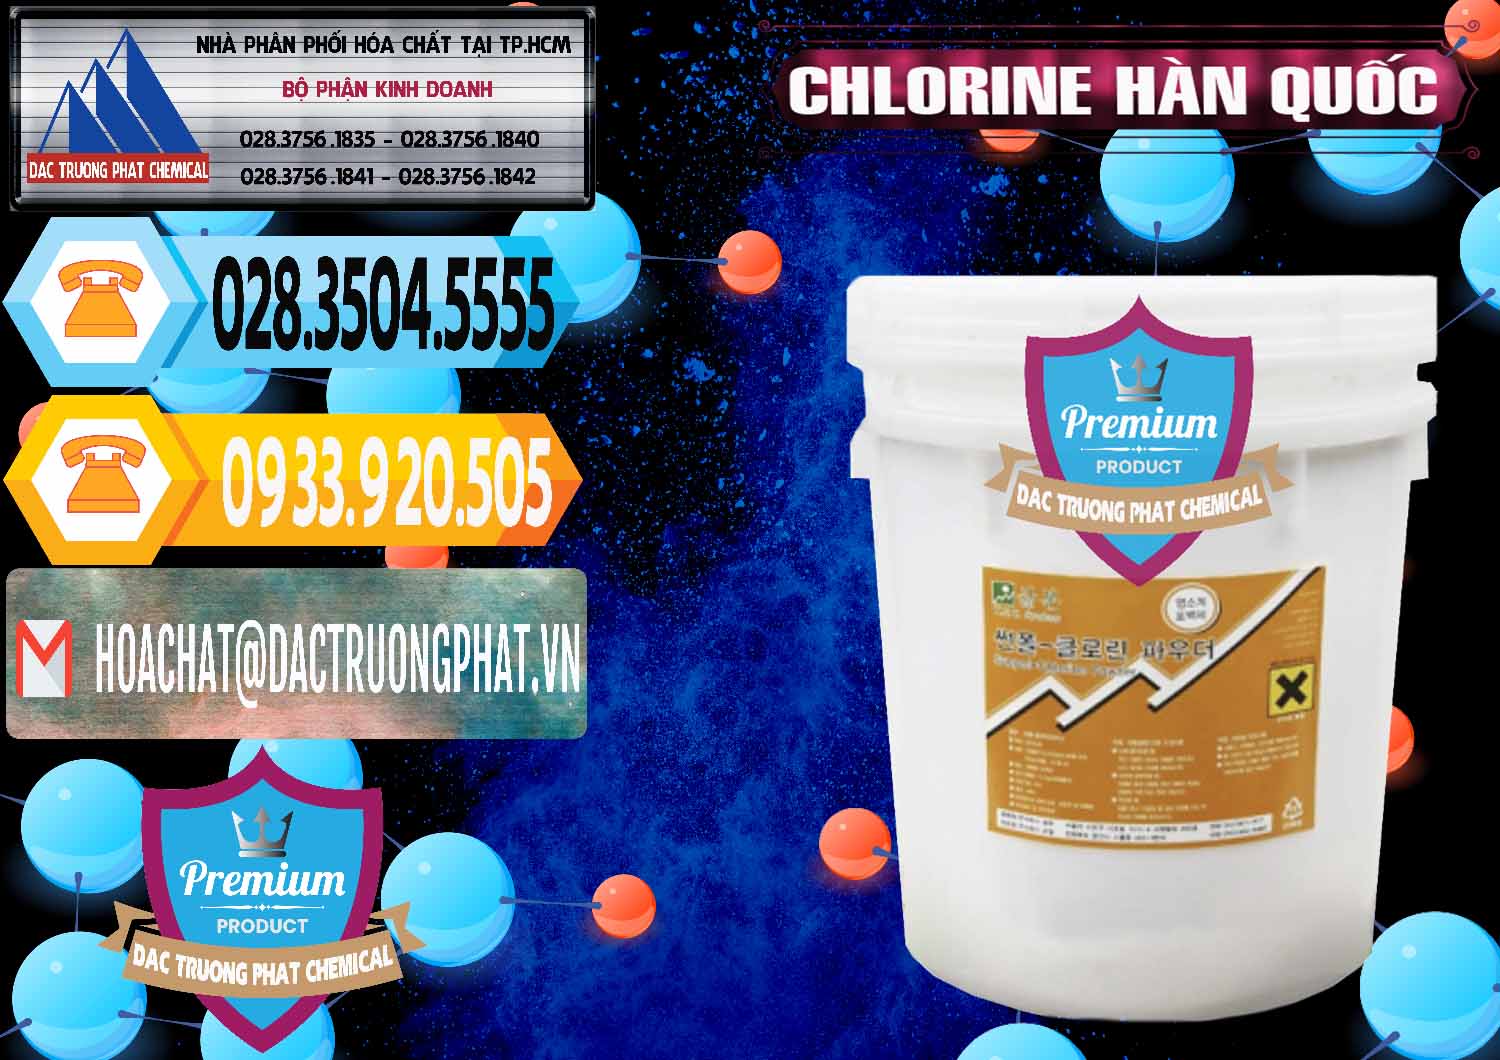 Cty chuyên bán và cung cấp Chlorine – Clorin 70% Hàn Quốc Korea - 0345 - Phân phối & bán hóa chất tại TP.HCM - hoachattayrua.net